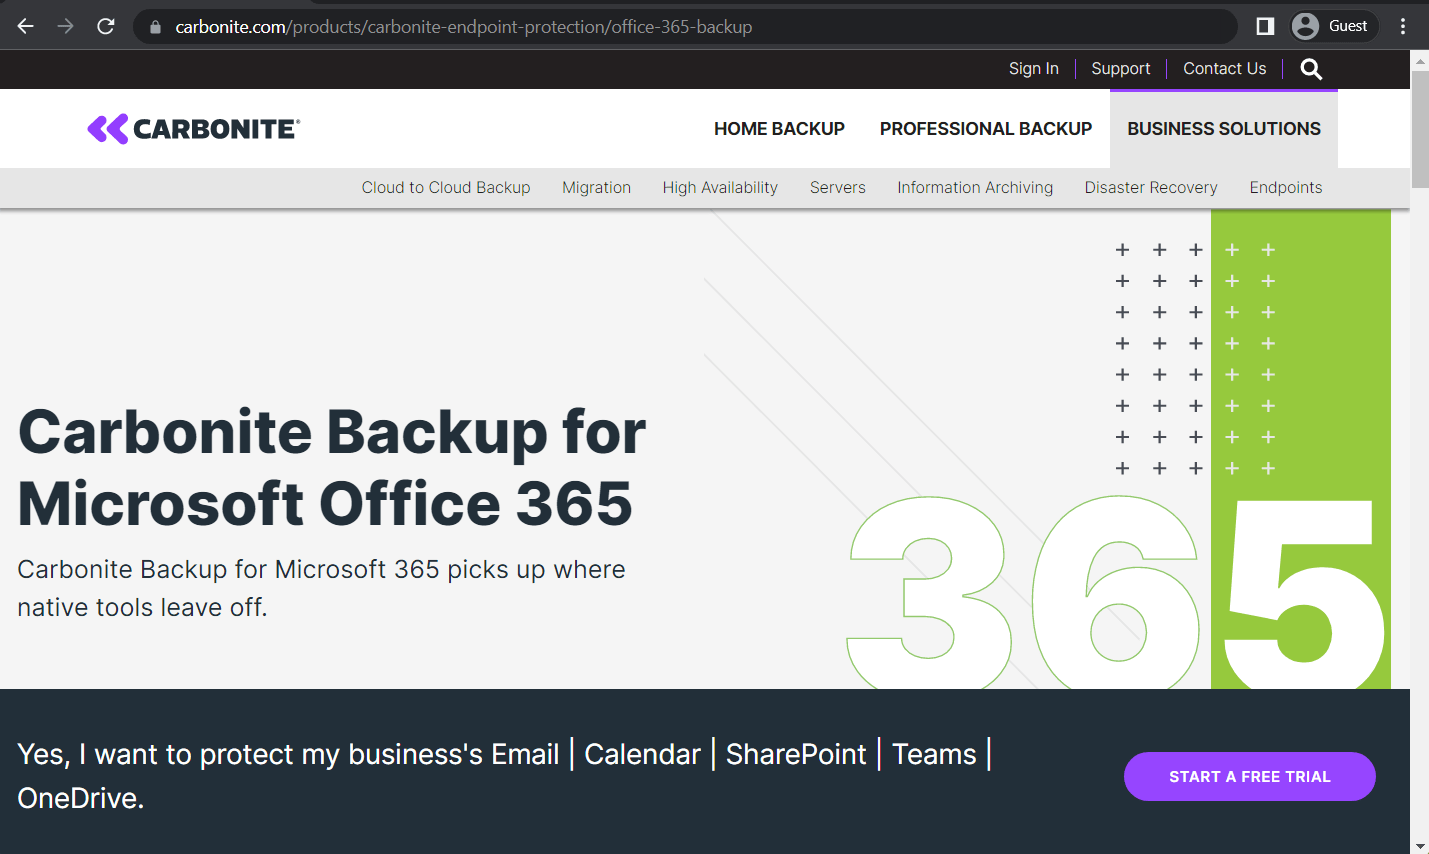 Copia de seguridad de Office 365. Soluciones de copia de seguridad O365